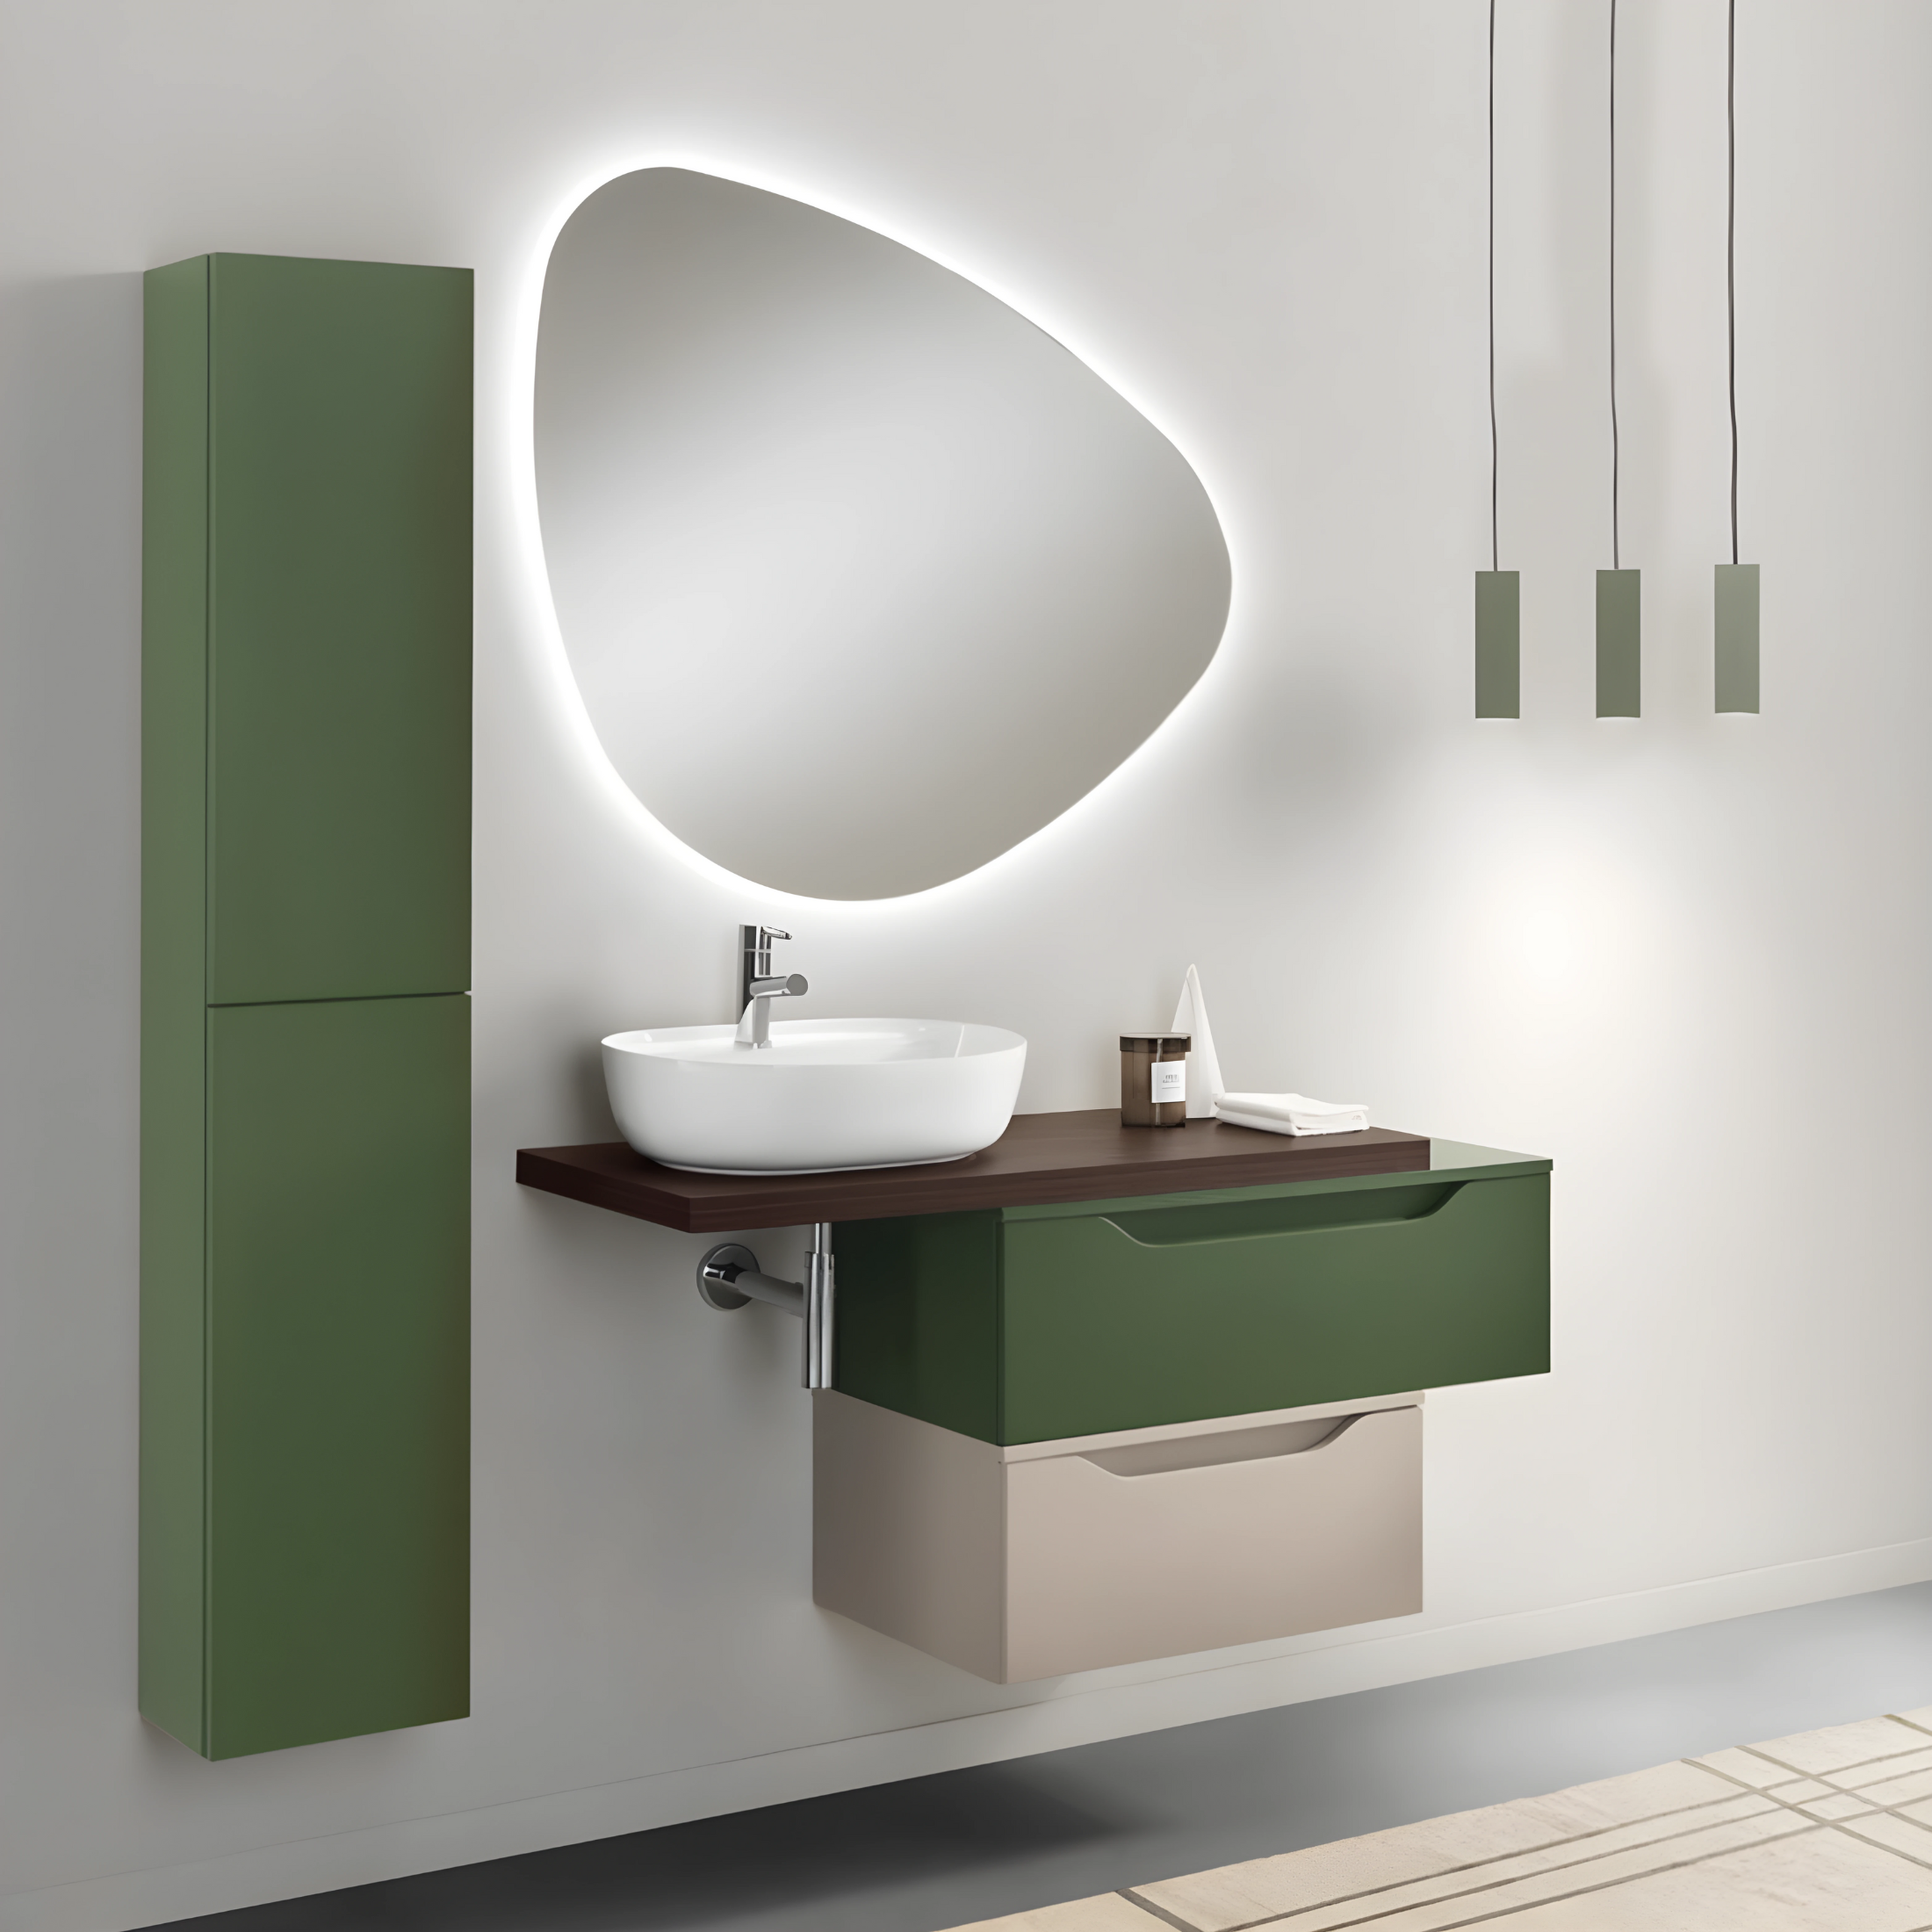 Mobile bagno sospeso già assemblato "Mixi b" 2 cassetti specchio led lavabo e colonna